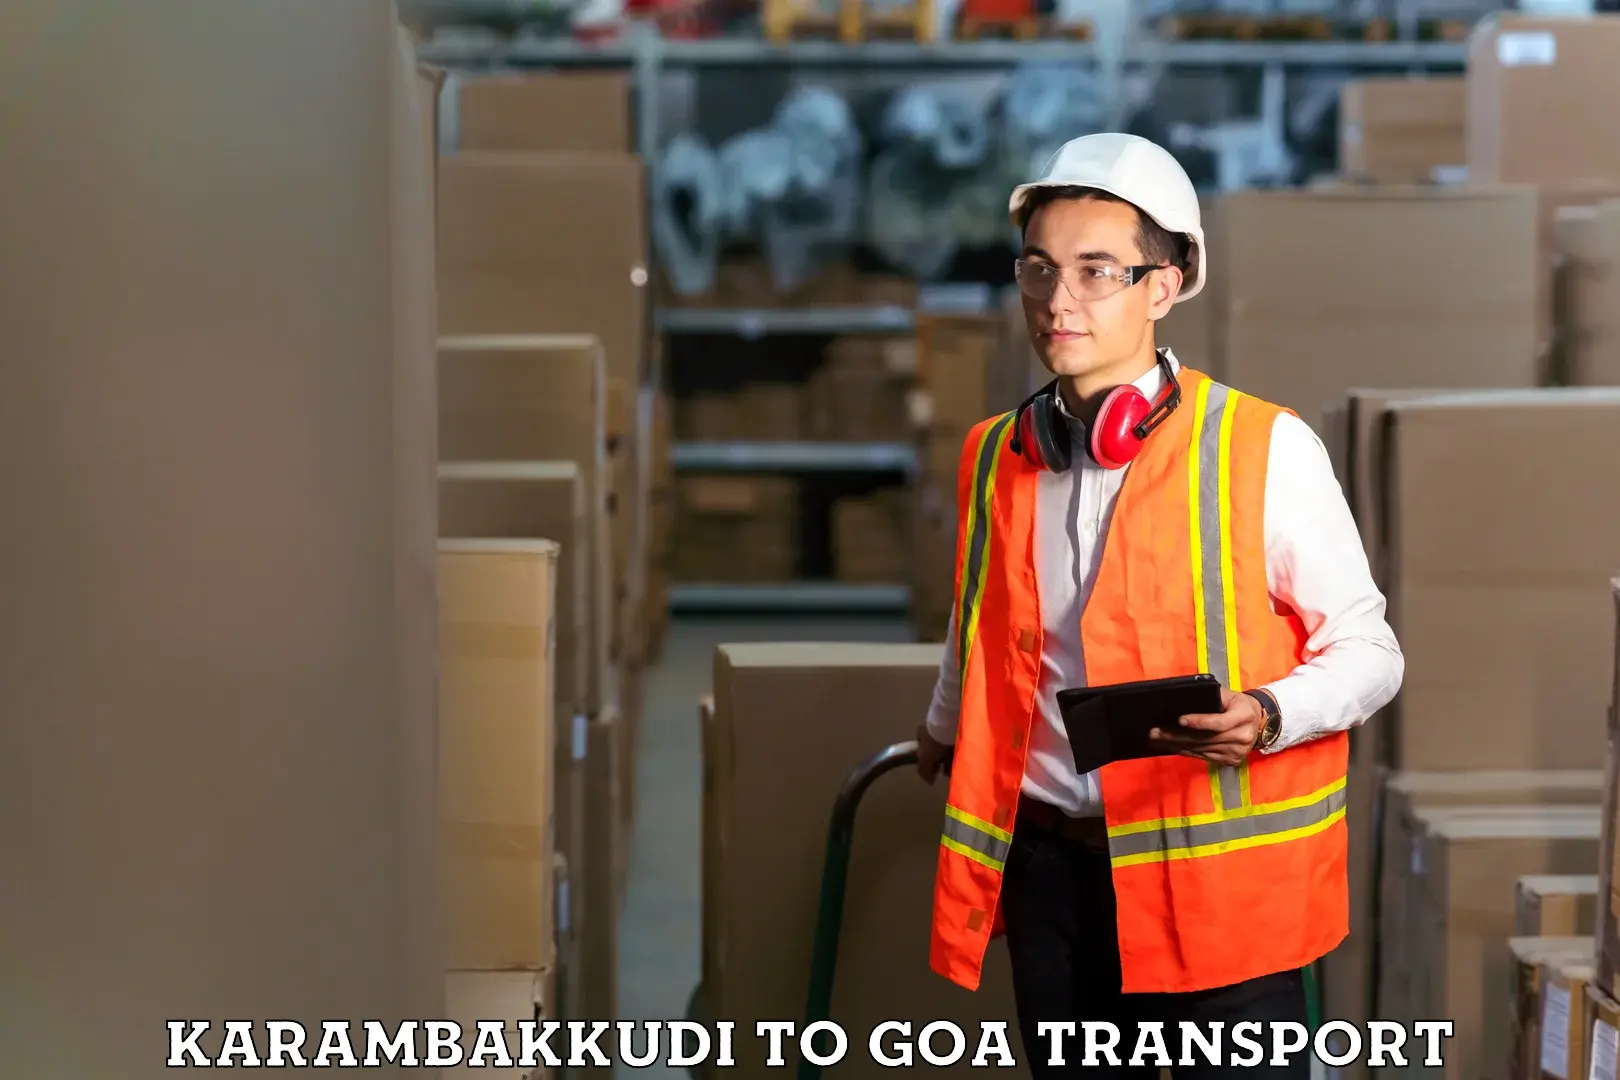 Transport in sharing Karambakkudi to Panjim